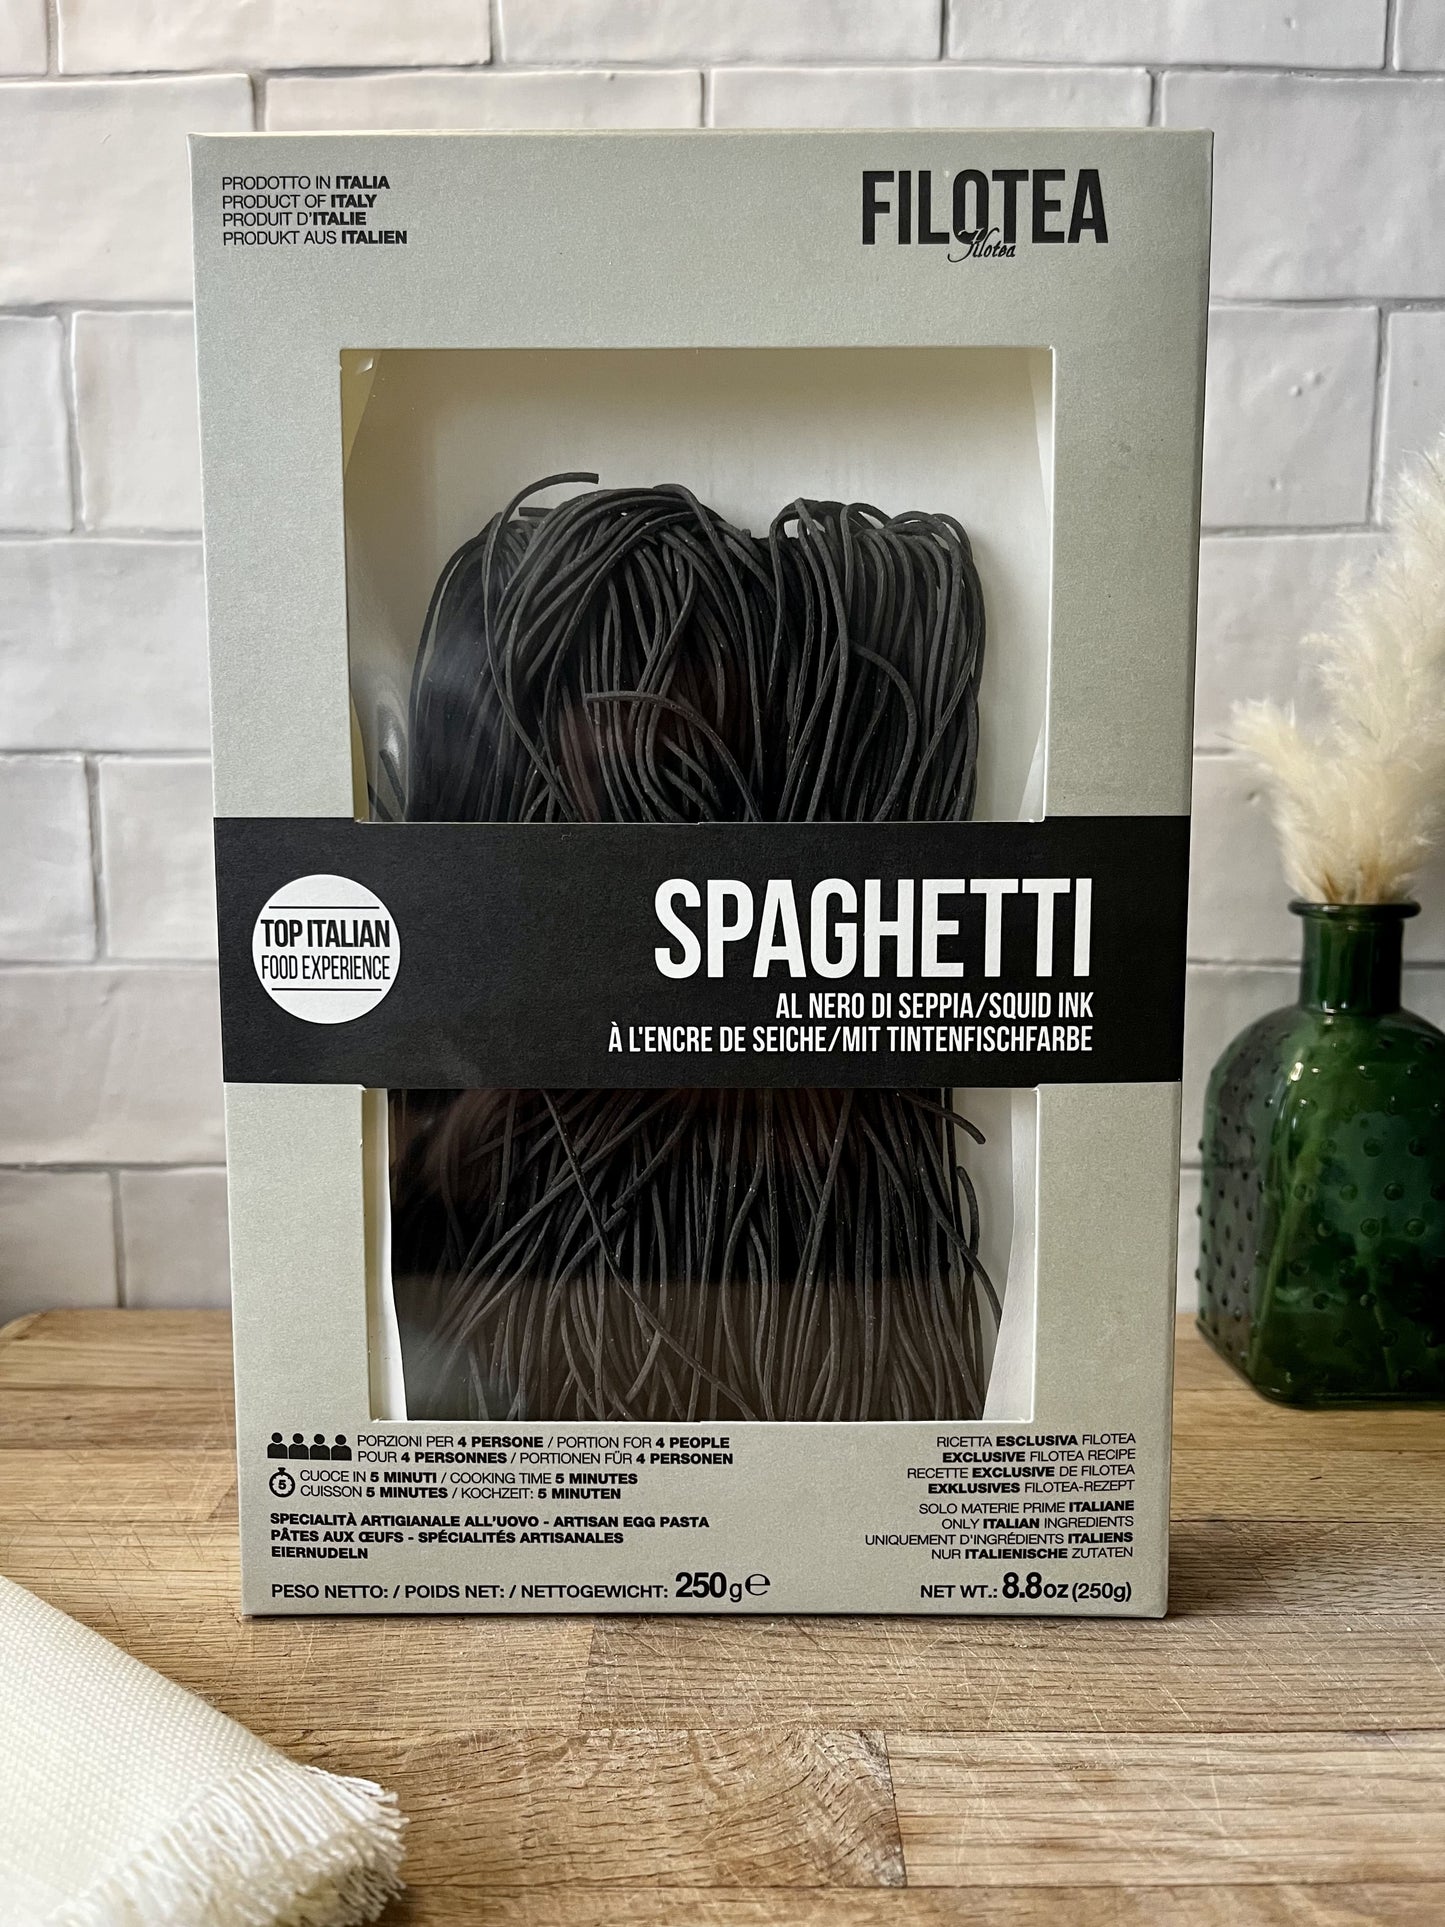 Spaghetti à l'Encre de Seiche Filotea